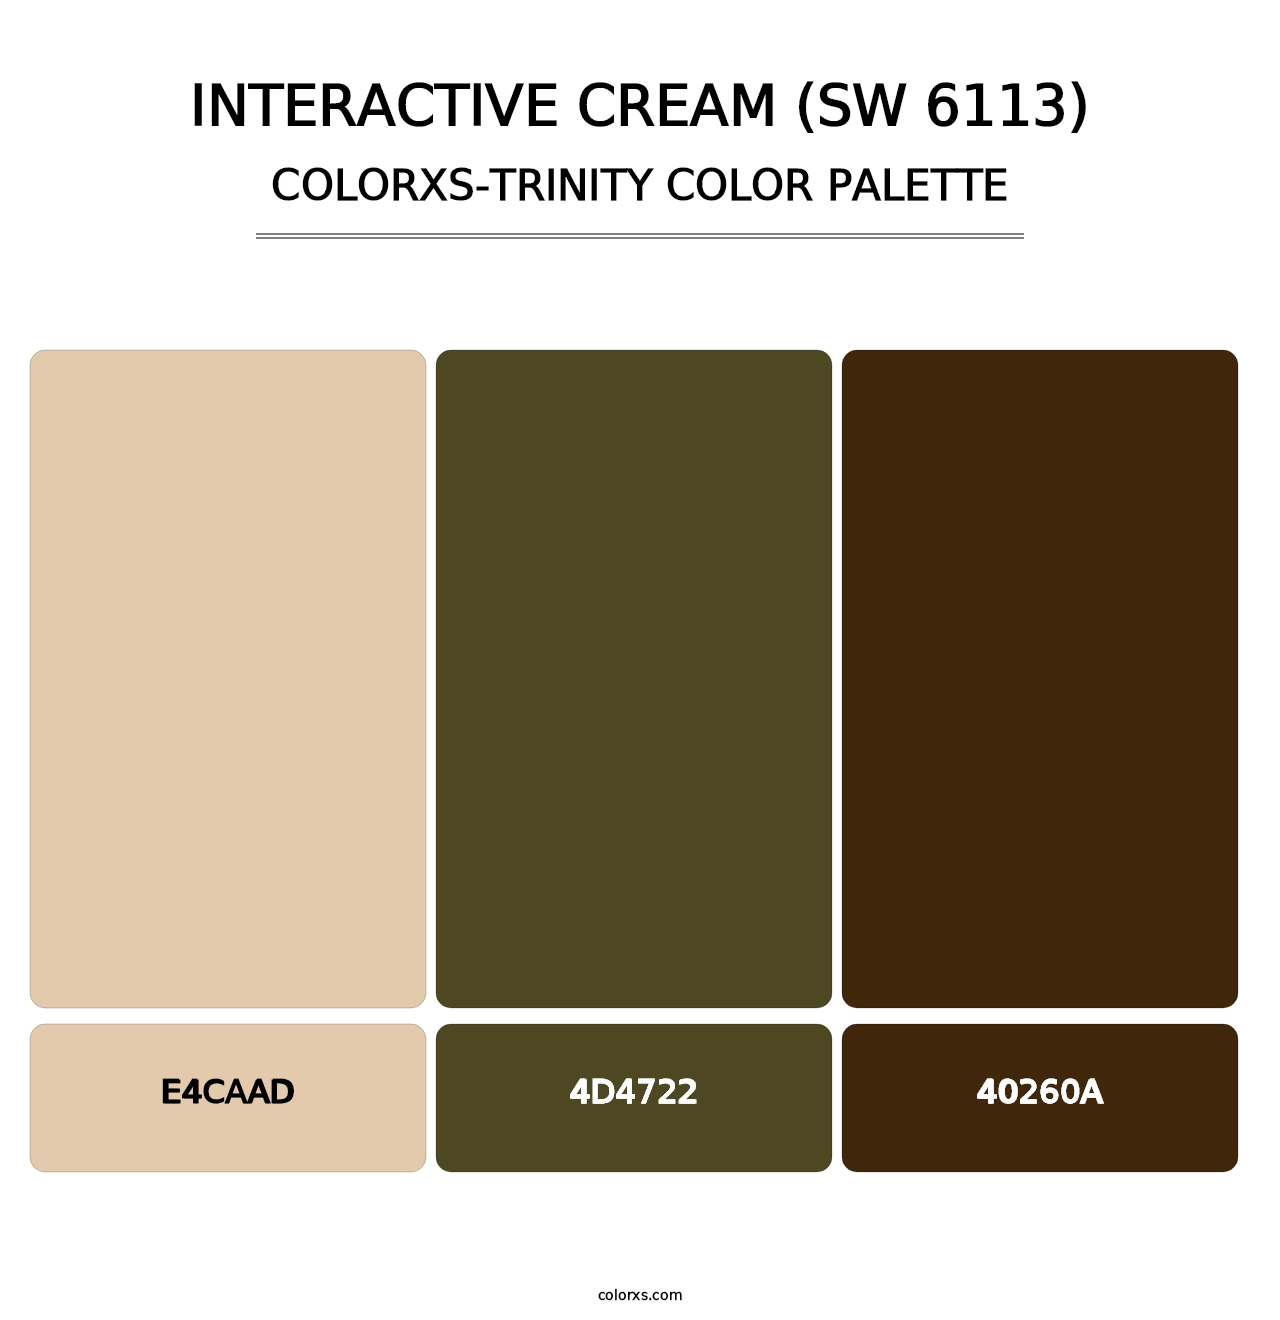 Interactive Cream (SW 6113) - Colorxs Trinity Palette